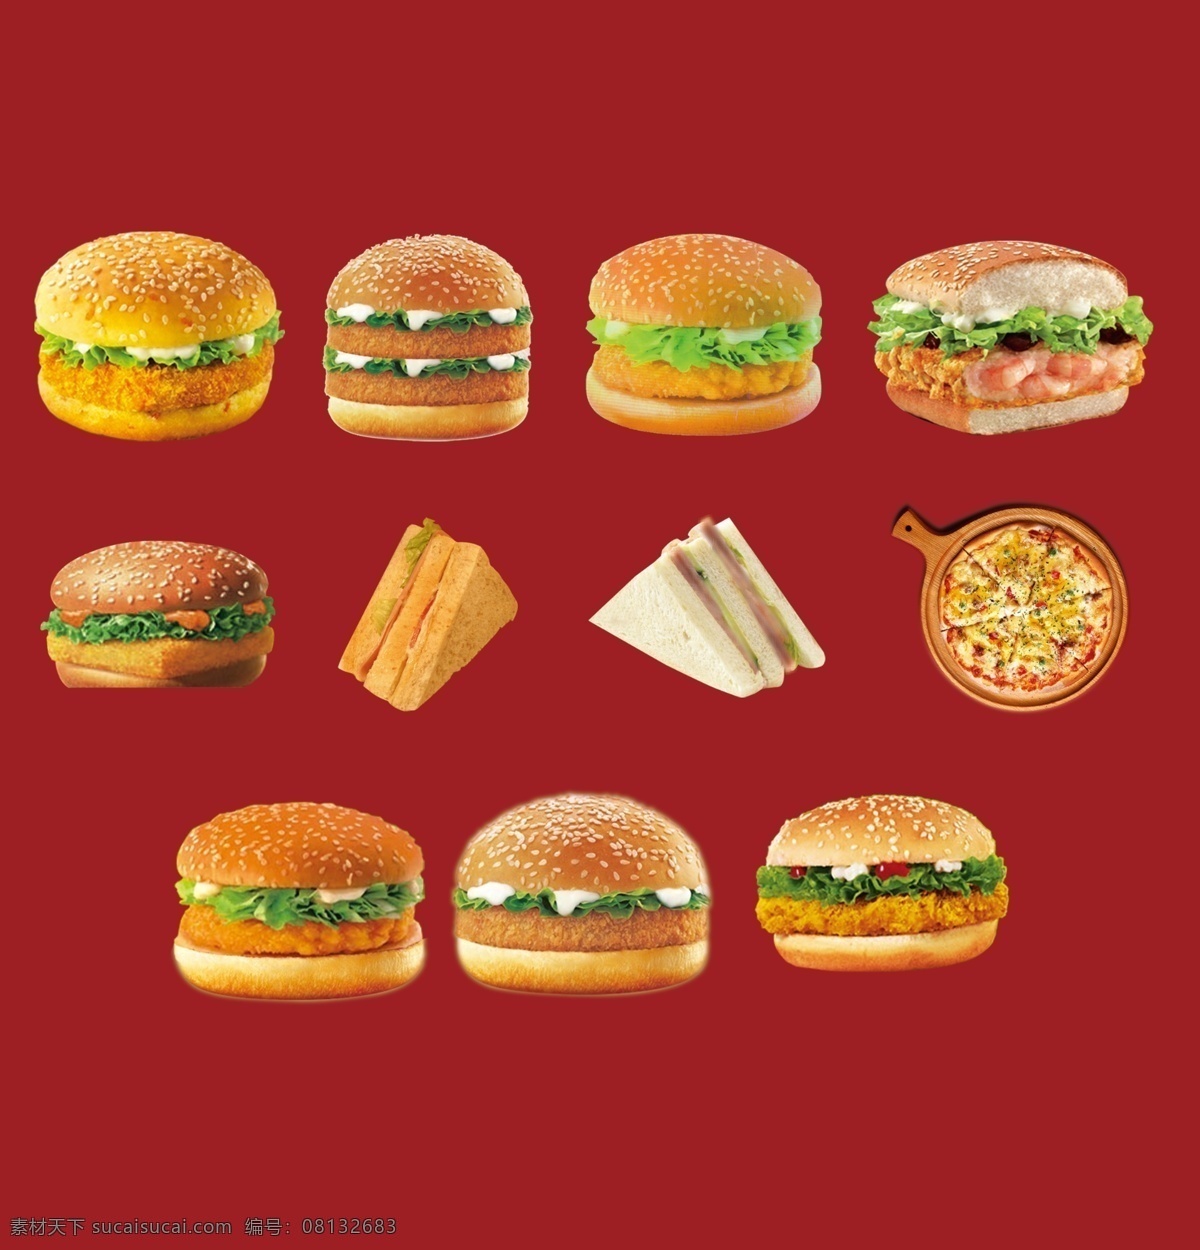 实拍 汉堡 真实 图案 装饰 集合 汉堡包素材 汉堡包图案 汉堡包装饰 汉堡包集合 实拍汉堡包 餐饮 鸡肉 夹心 黄色